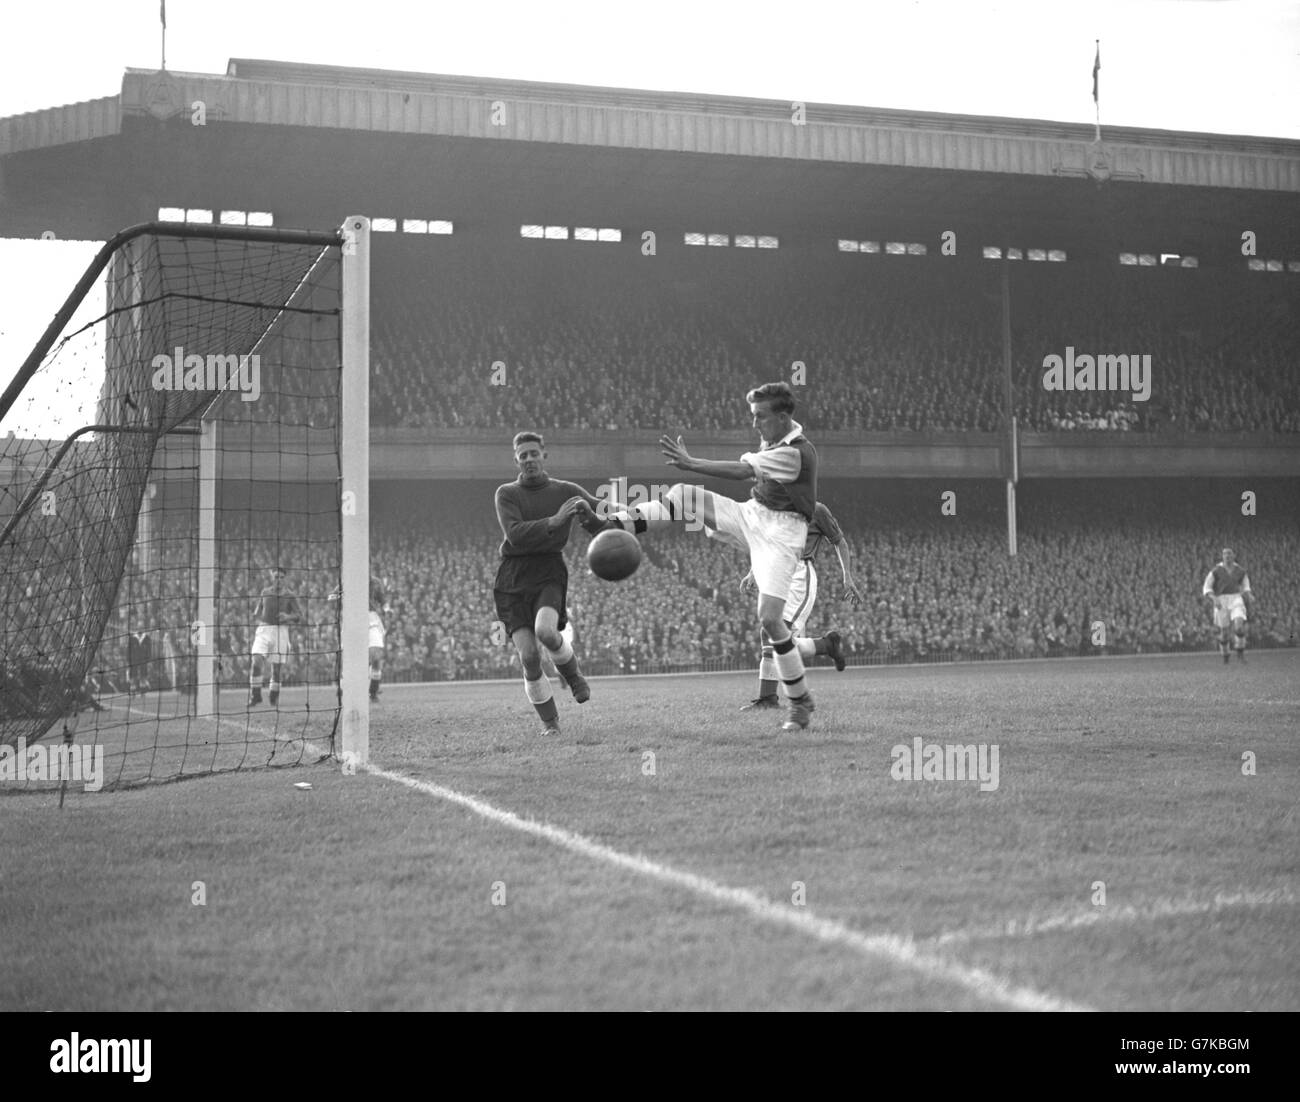 Football - League Division One - Arsenal / Everton - Highbury Stadium.Peter Goring (r), d'Arsenal, tente de faire passer le ballon devant le gardien de but d'Everton Ted Sagar. Banque D'Images